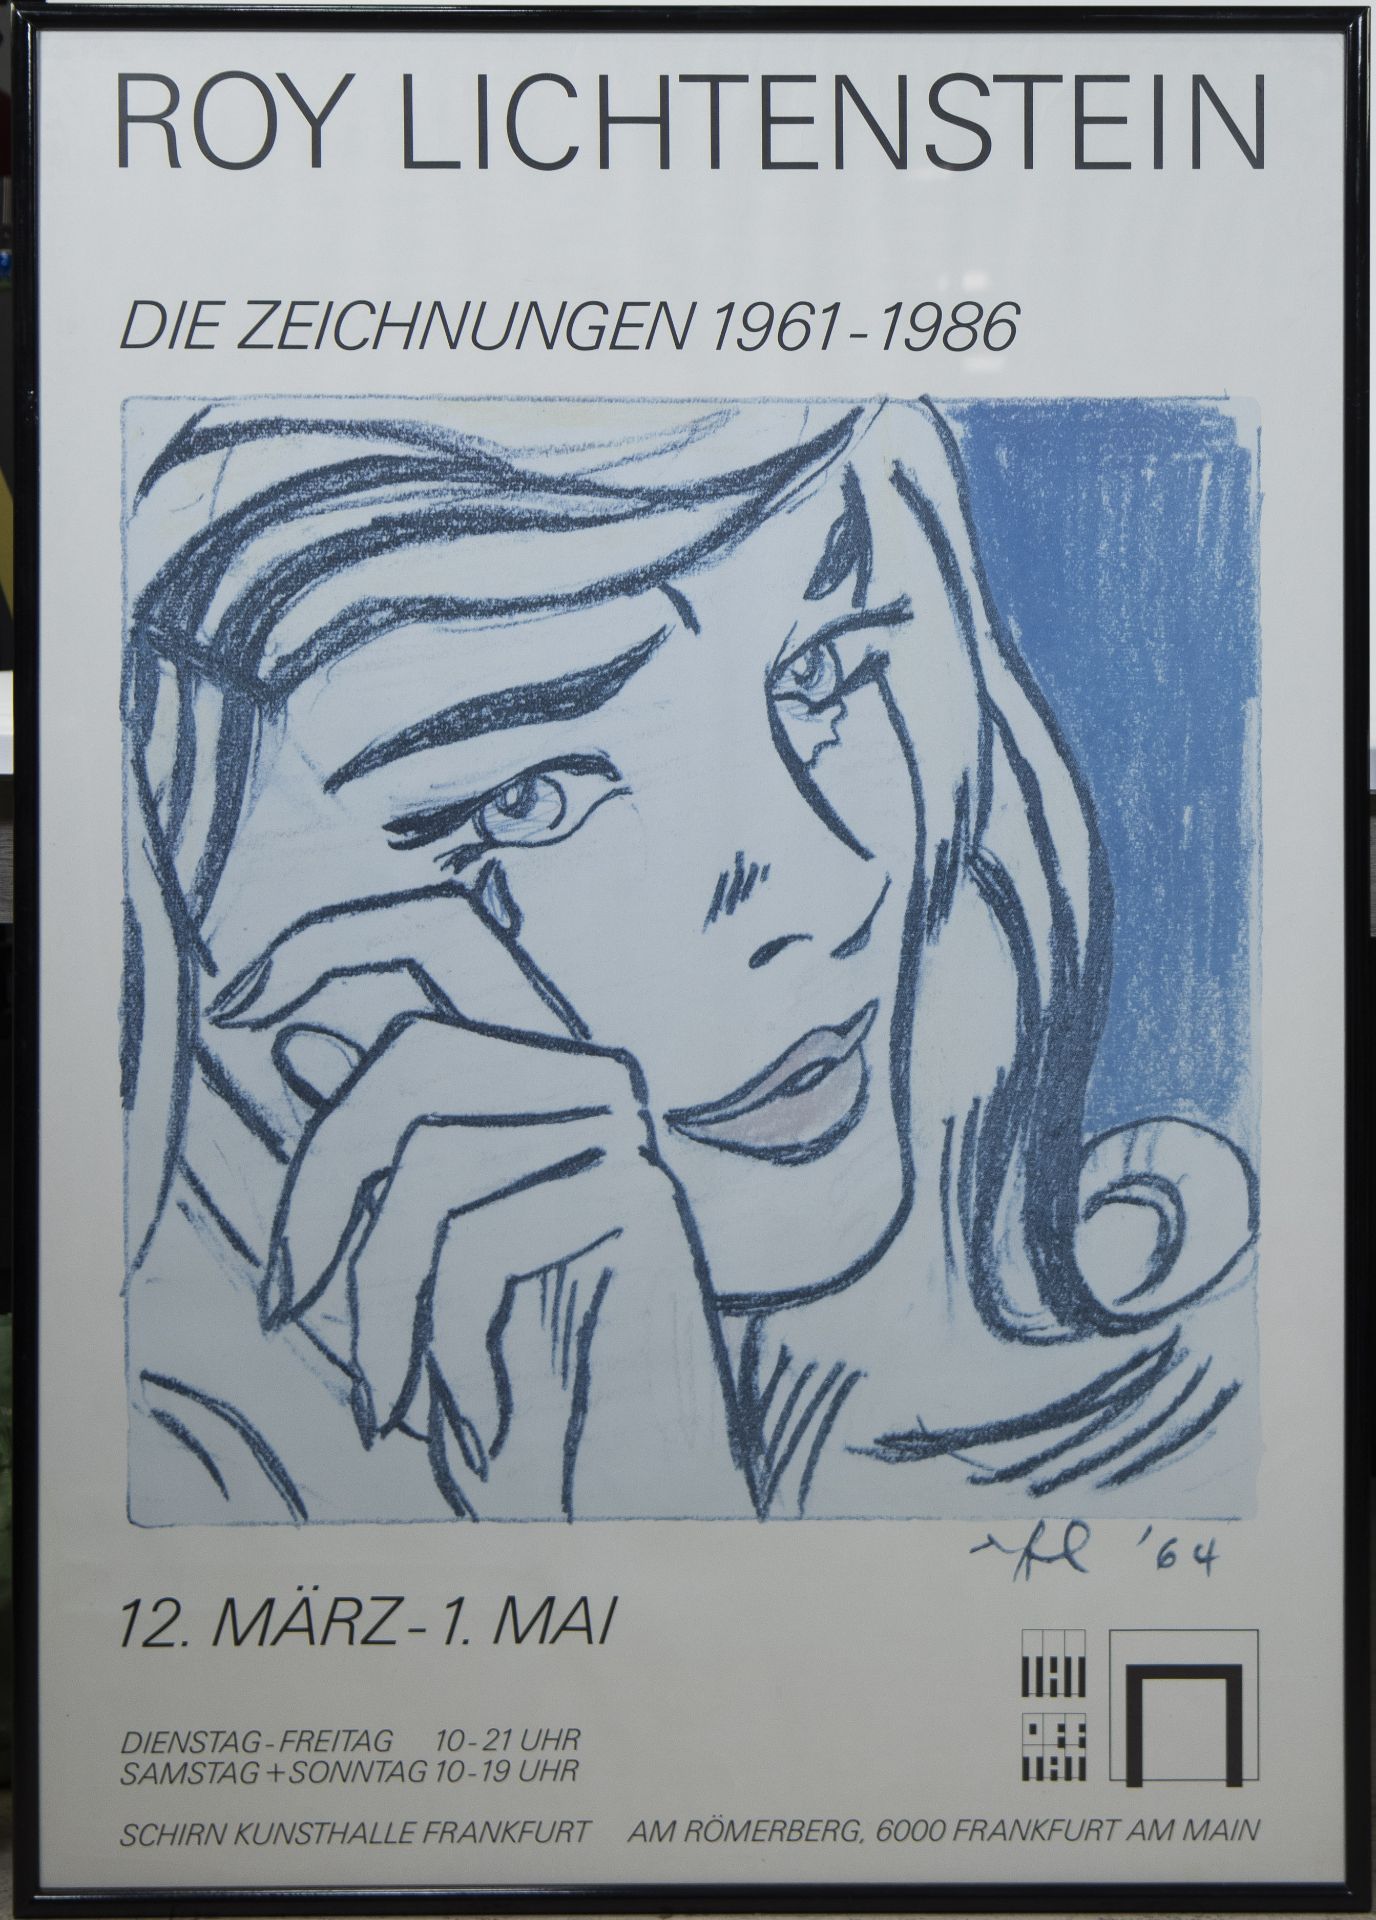 2 posters by Roy Lichtenstein 1964 and MIRO 1988, Schirn Kunsthalle Frankfurt, framed - Image 4 of 5